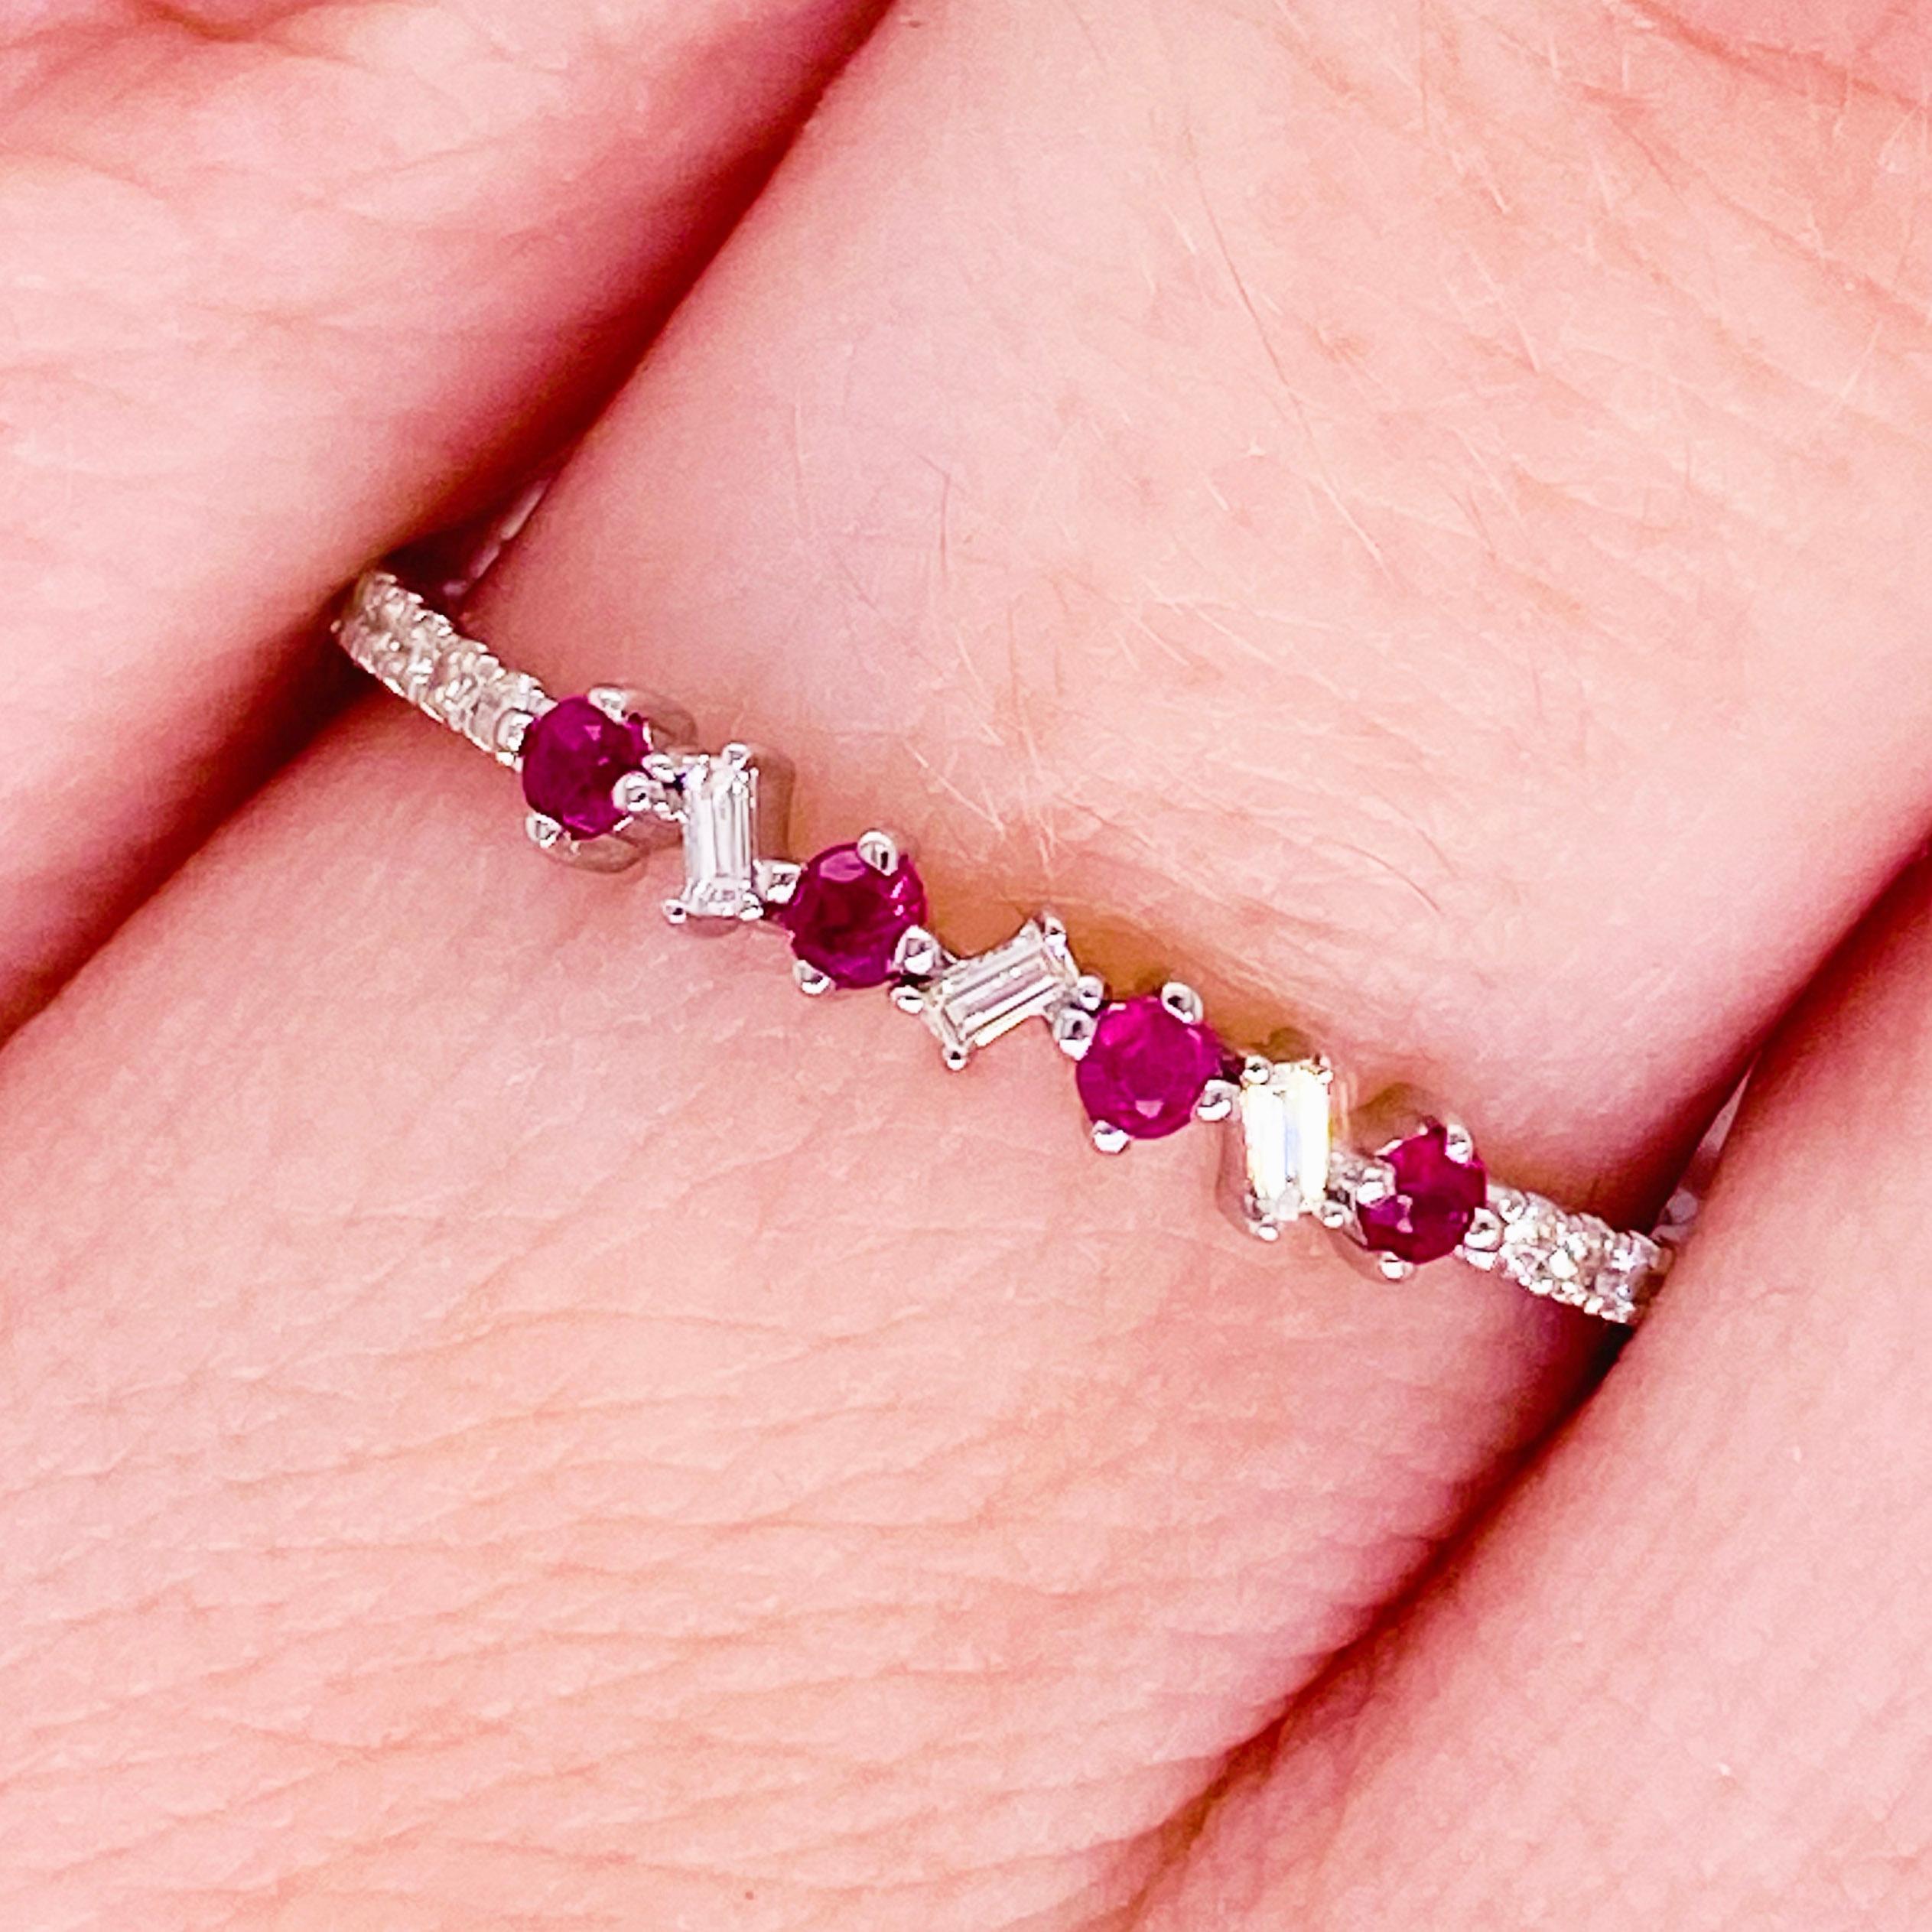 Lebendige Rubine und strahlend weiße Diamanten haben noch nie besser ausgesehen! Dieses Rubin- und Diamantband besteht aus echten, natürlichen, runden Rubinen, die neben strahlenden weißen Baguette- und runden Diamanten gefasst sind. Die Steine sind